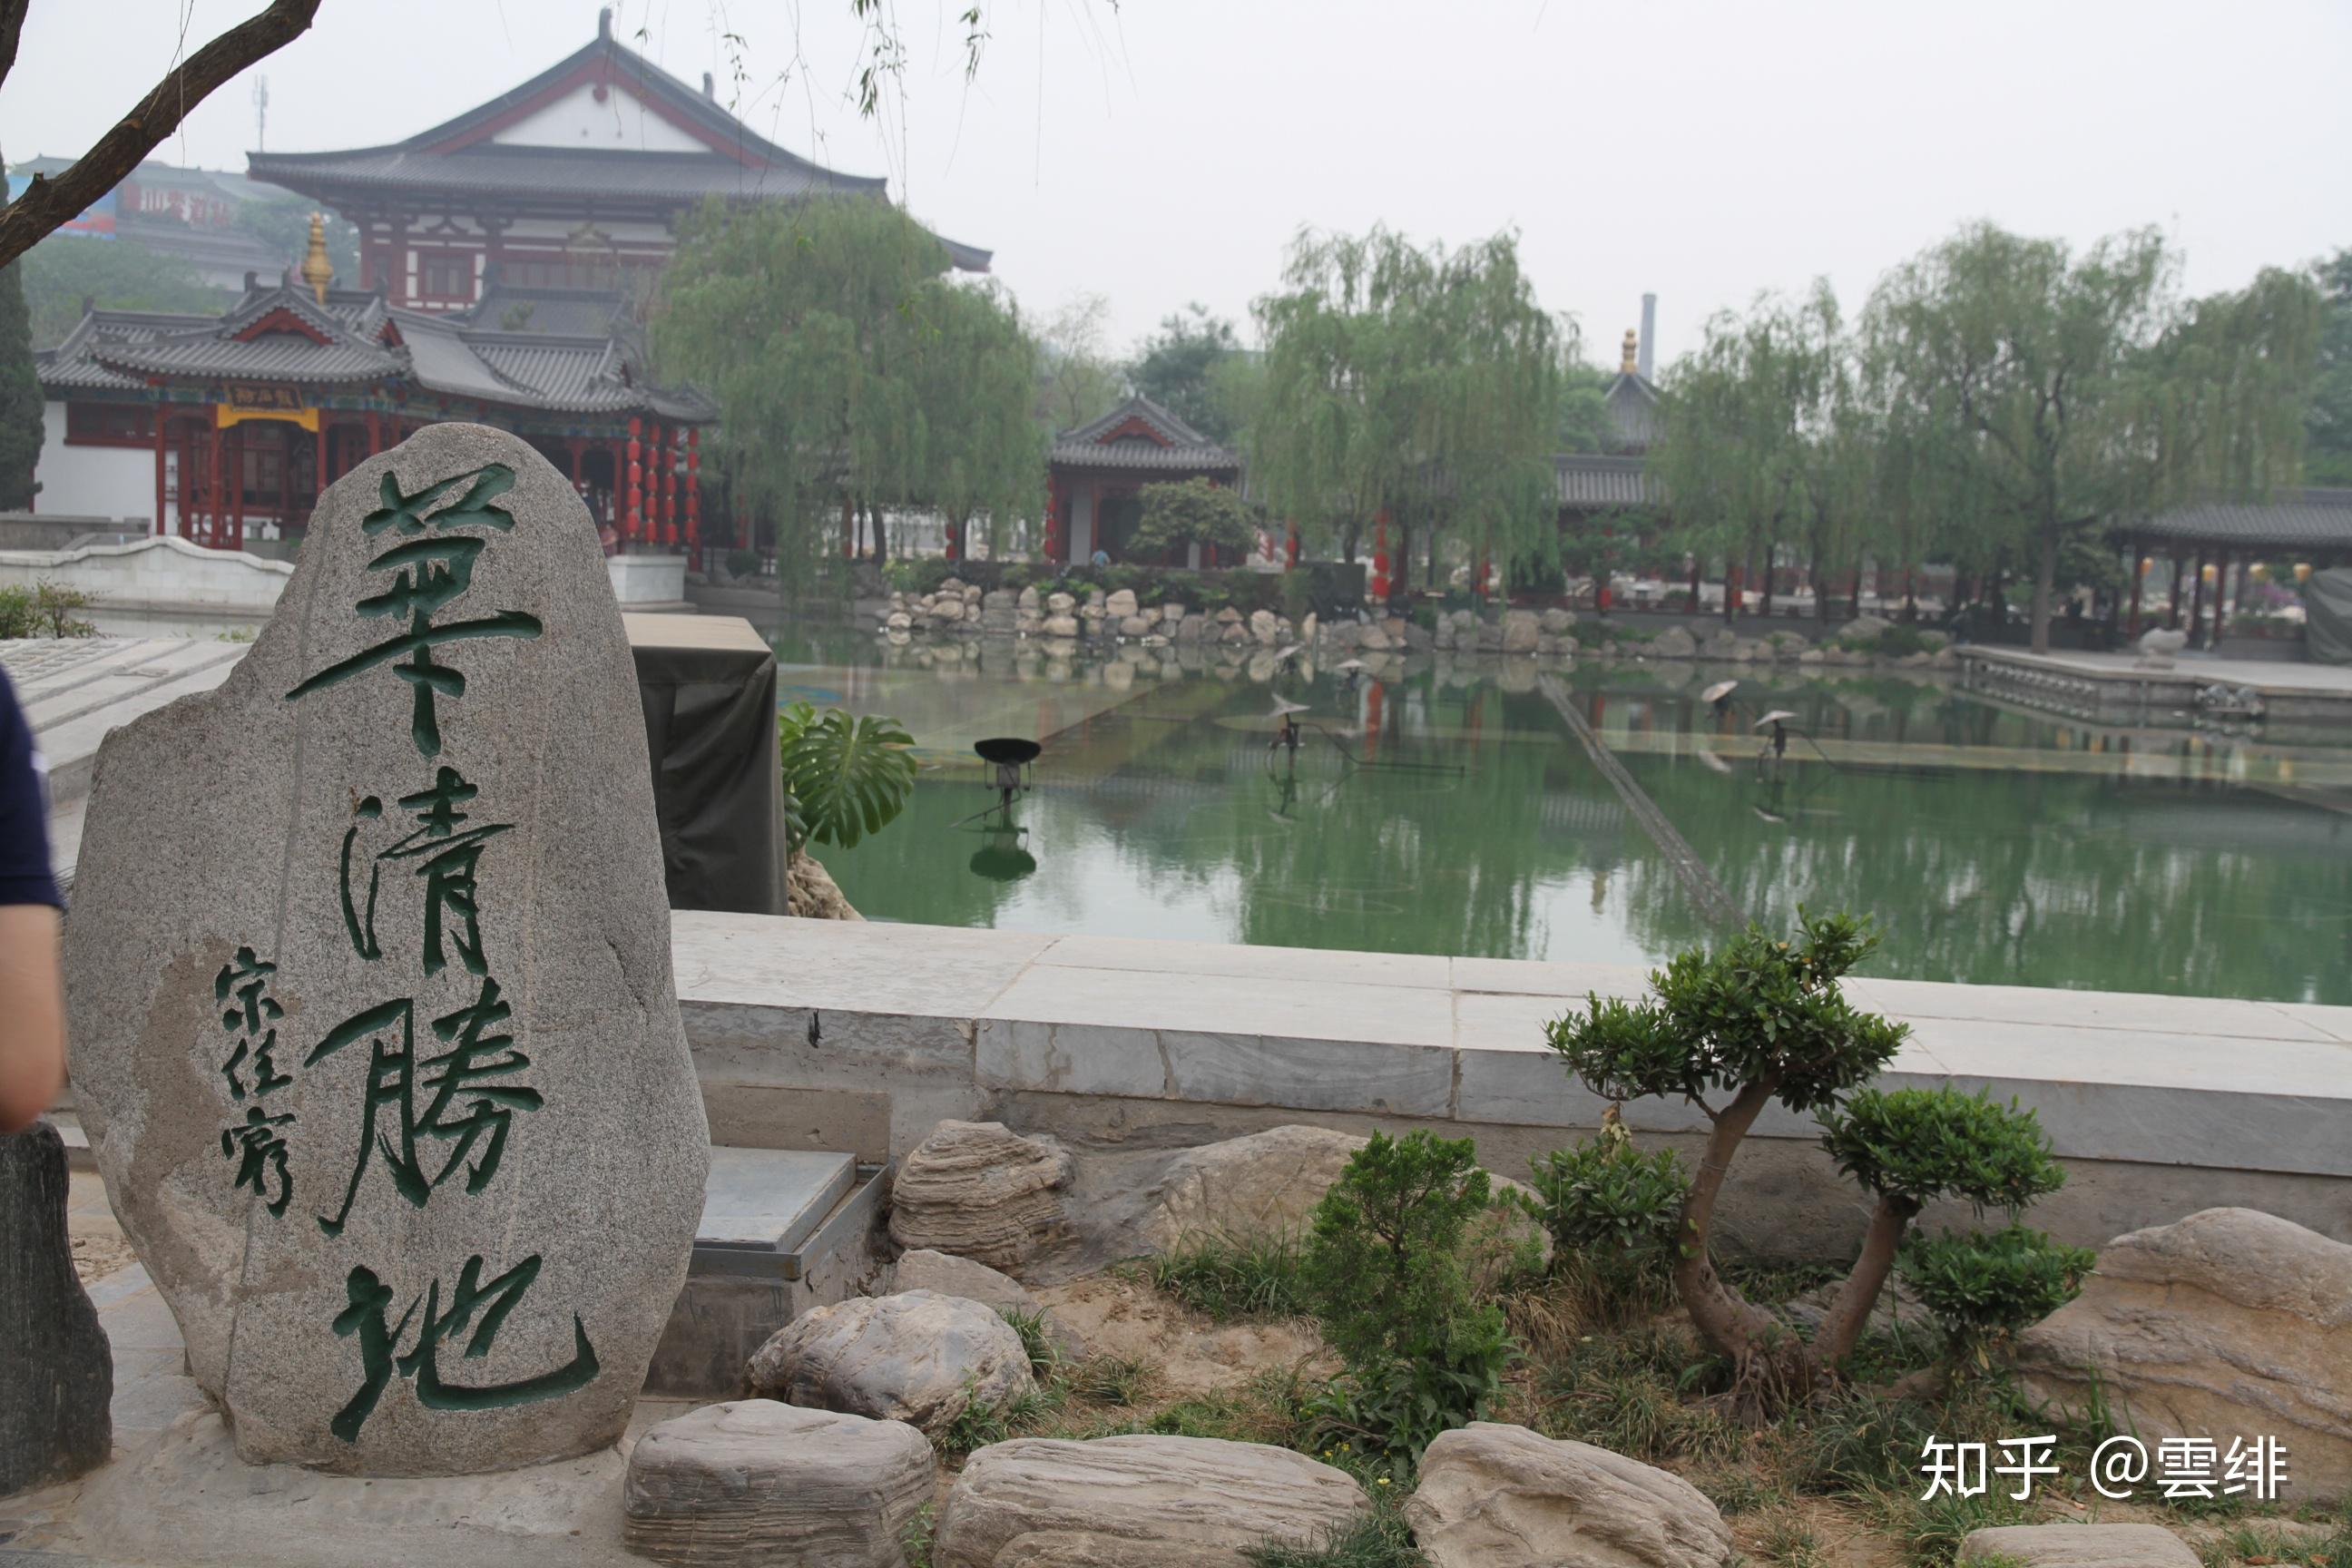 提到温泉就不得不说起@华清宫 ，这里的御汤文化已经有六千年的历史